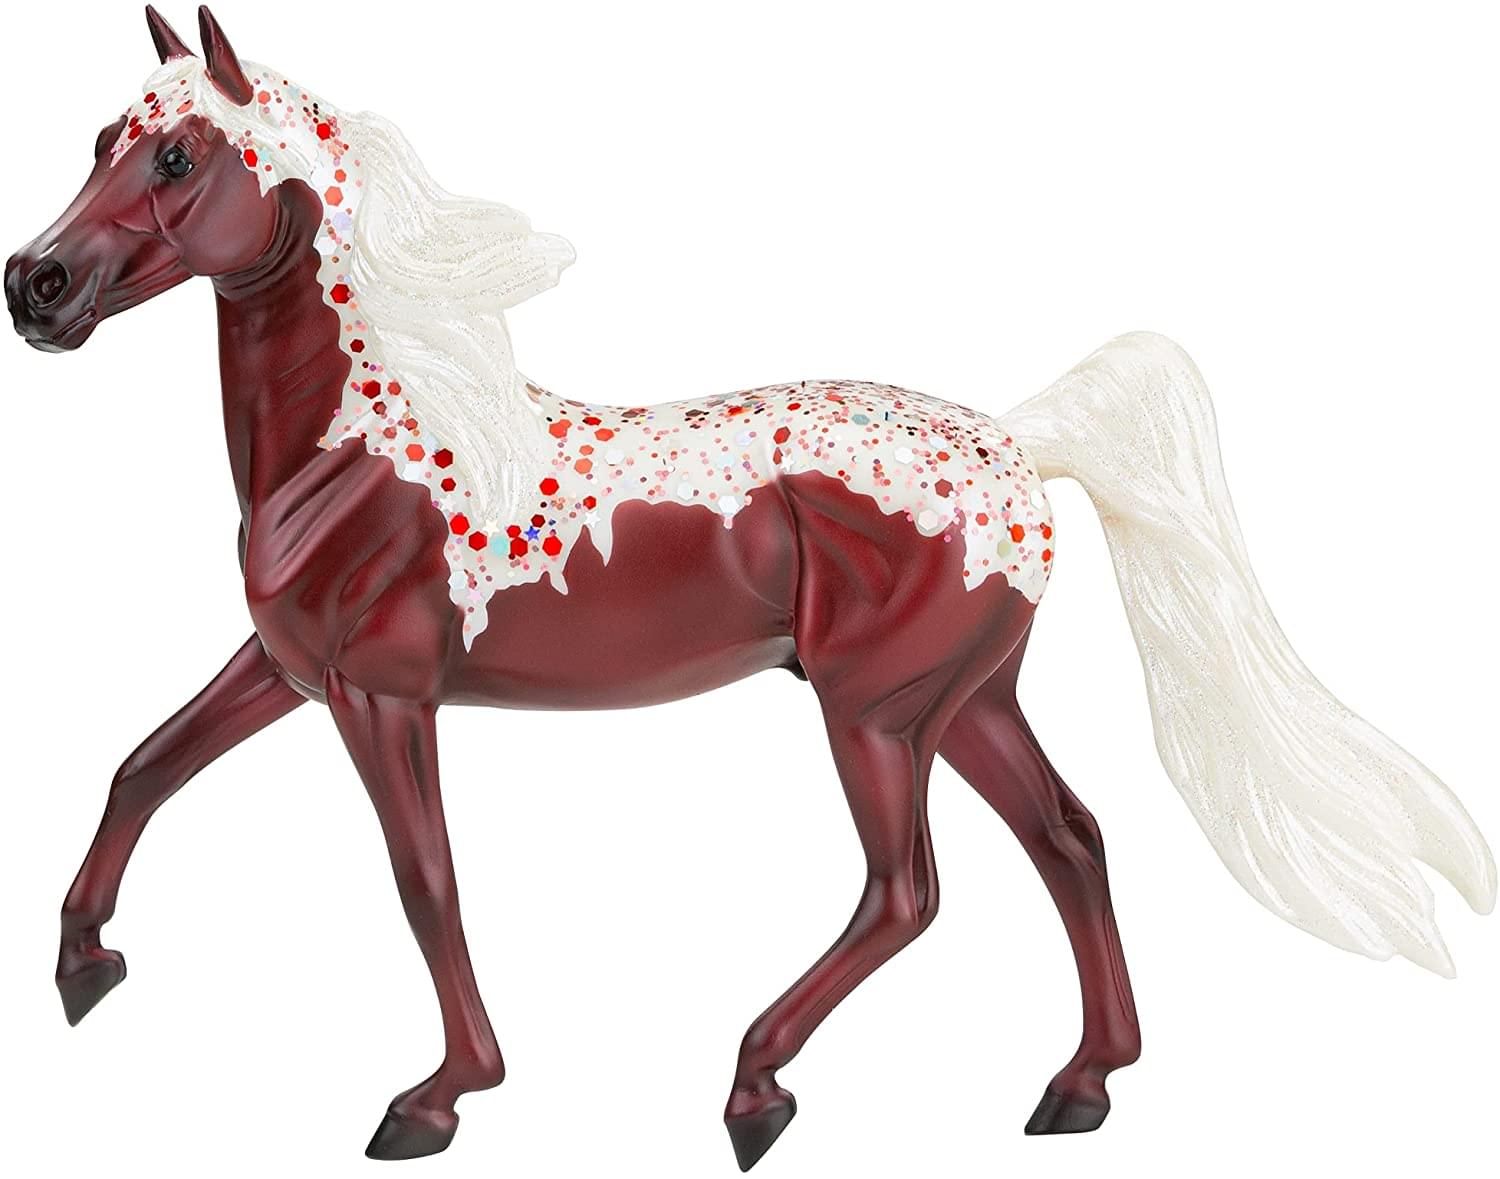 Breyer Freedom Series 1:12 Scale Model Horse | Red Velvet